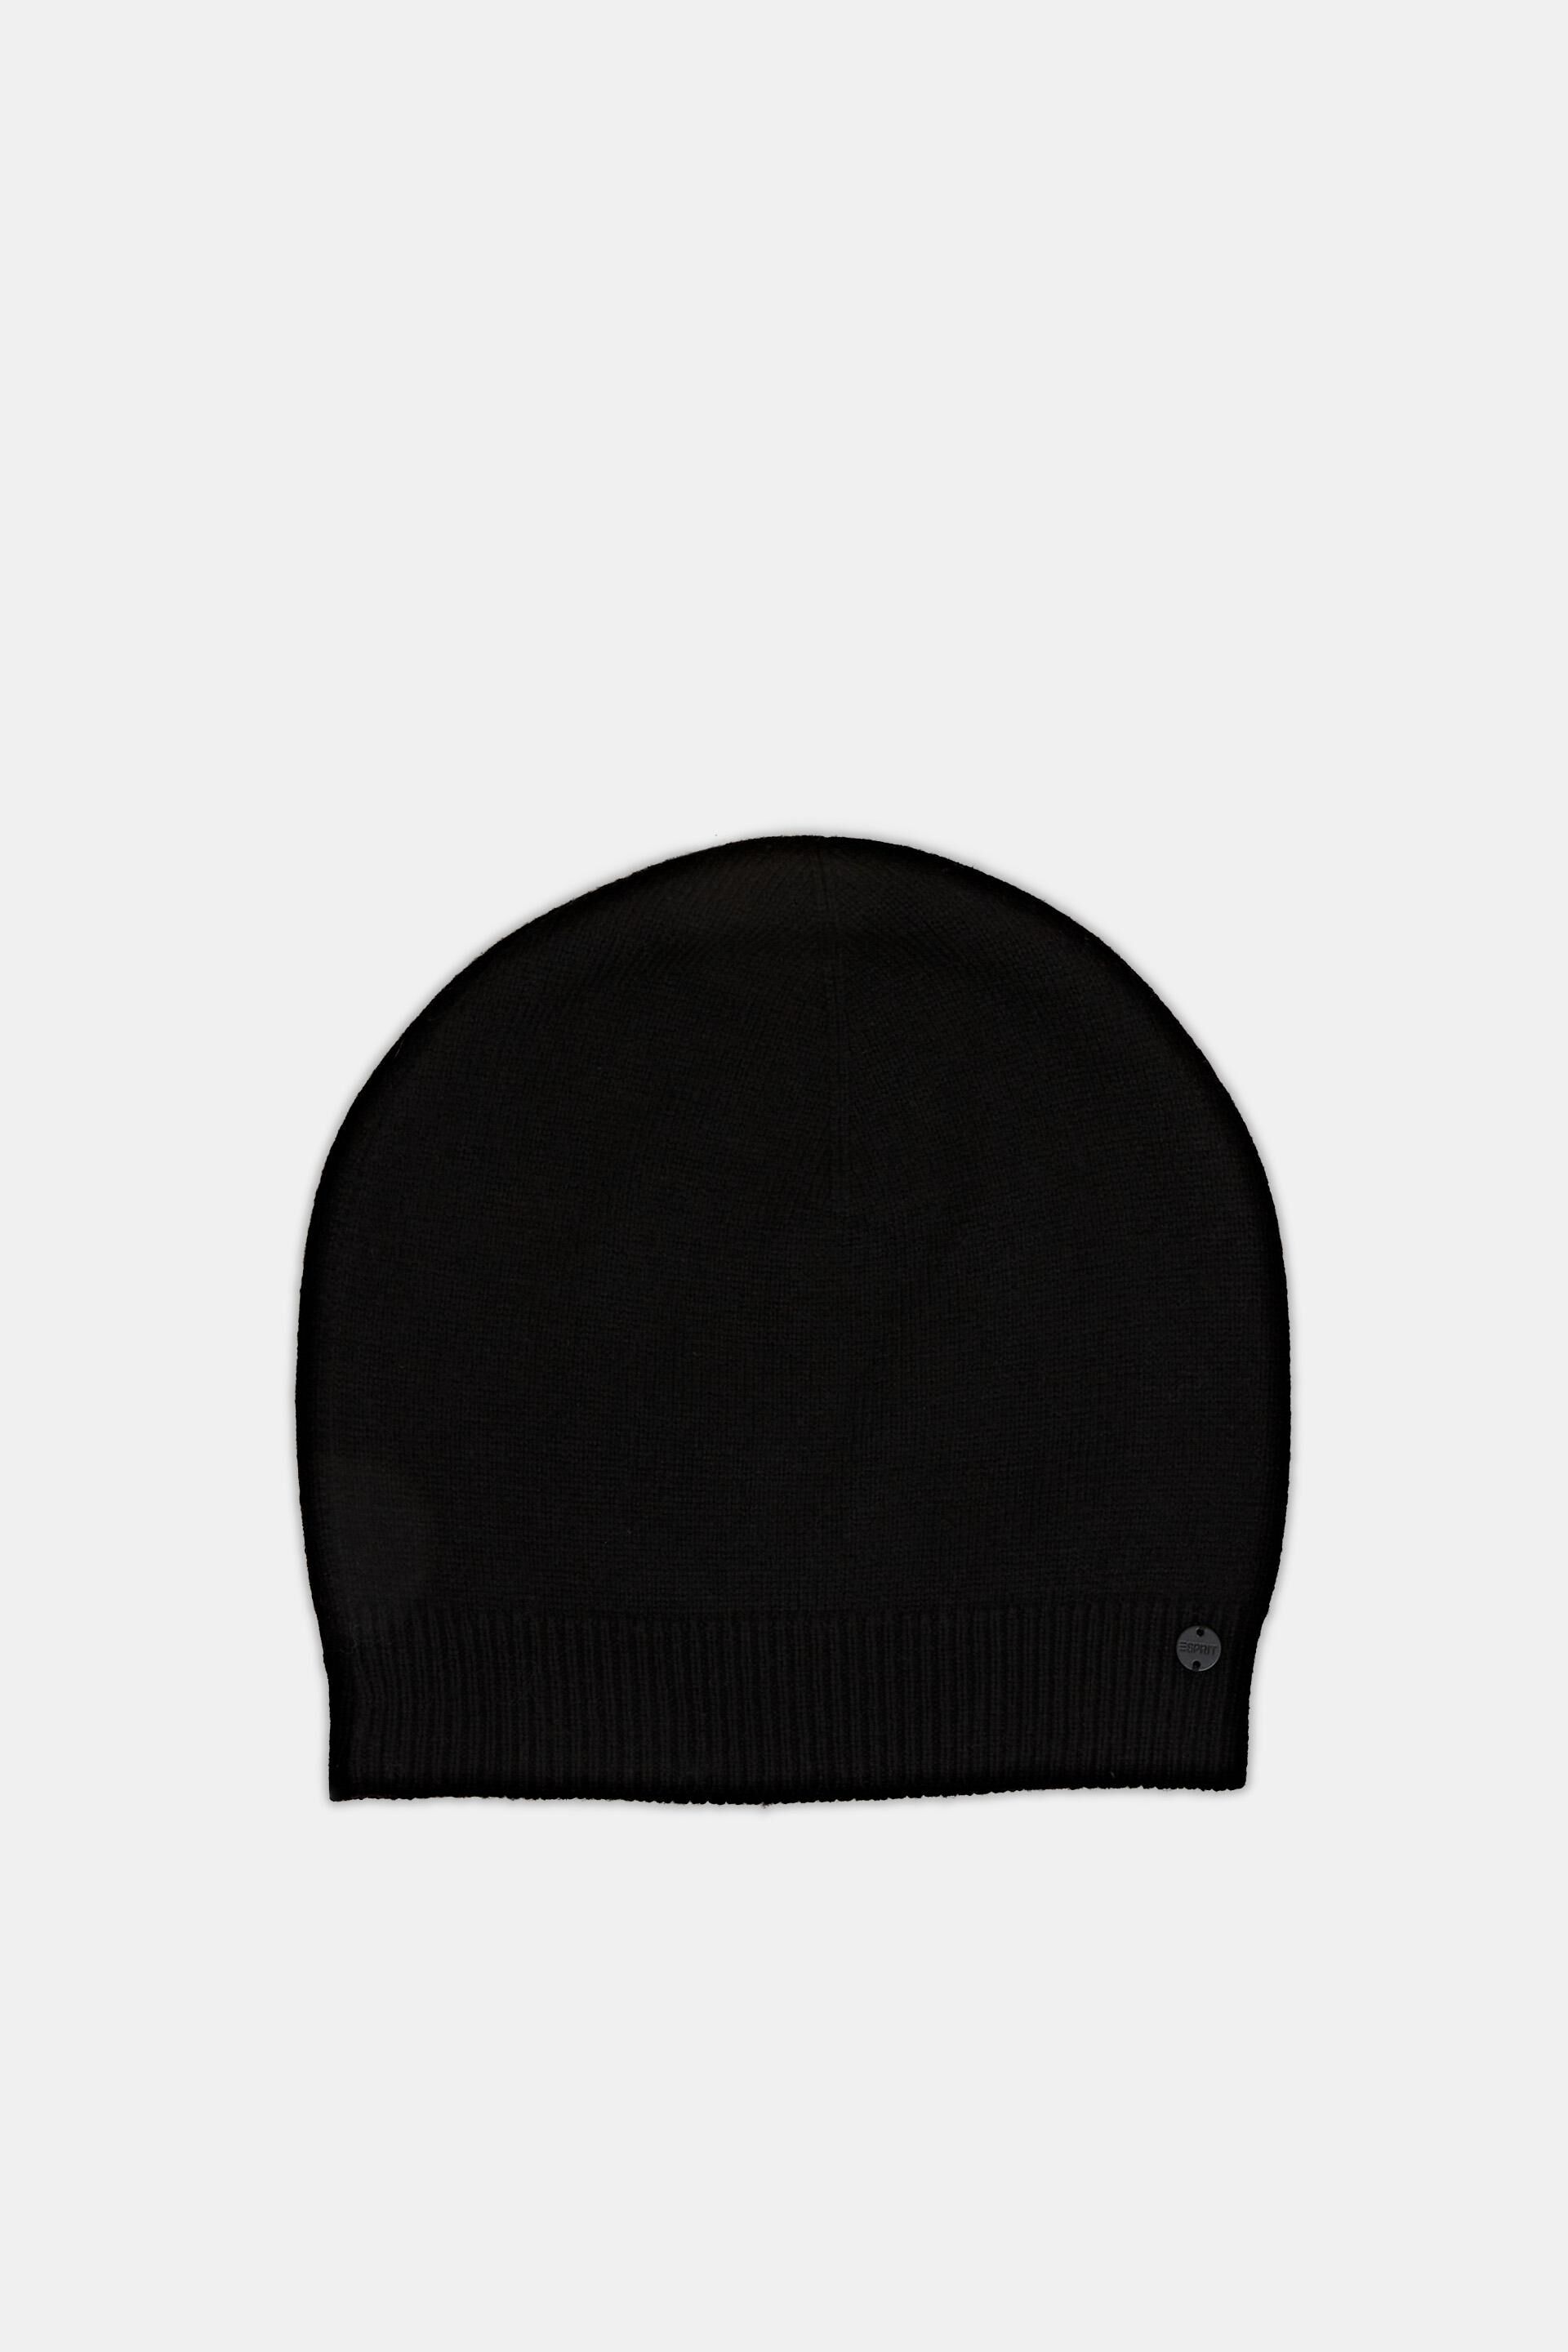 Esprit Hats/Caps